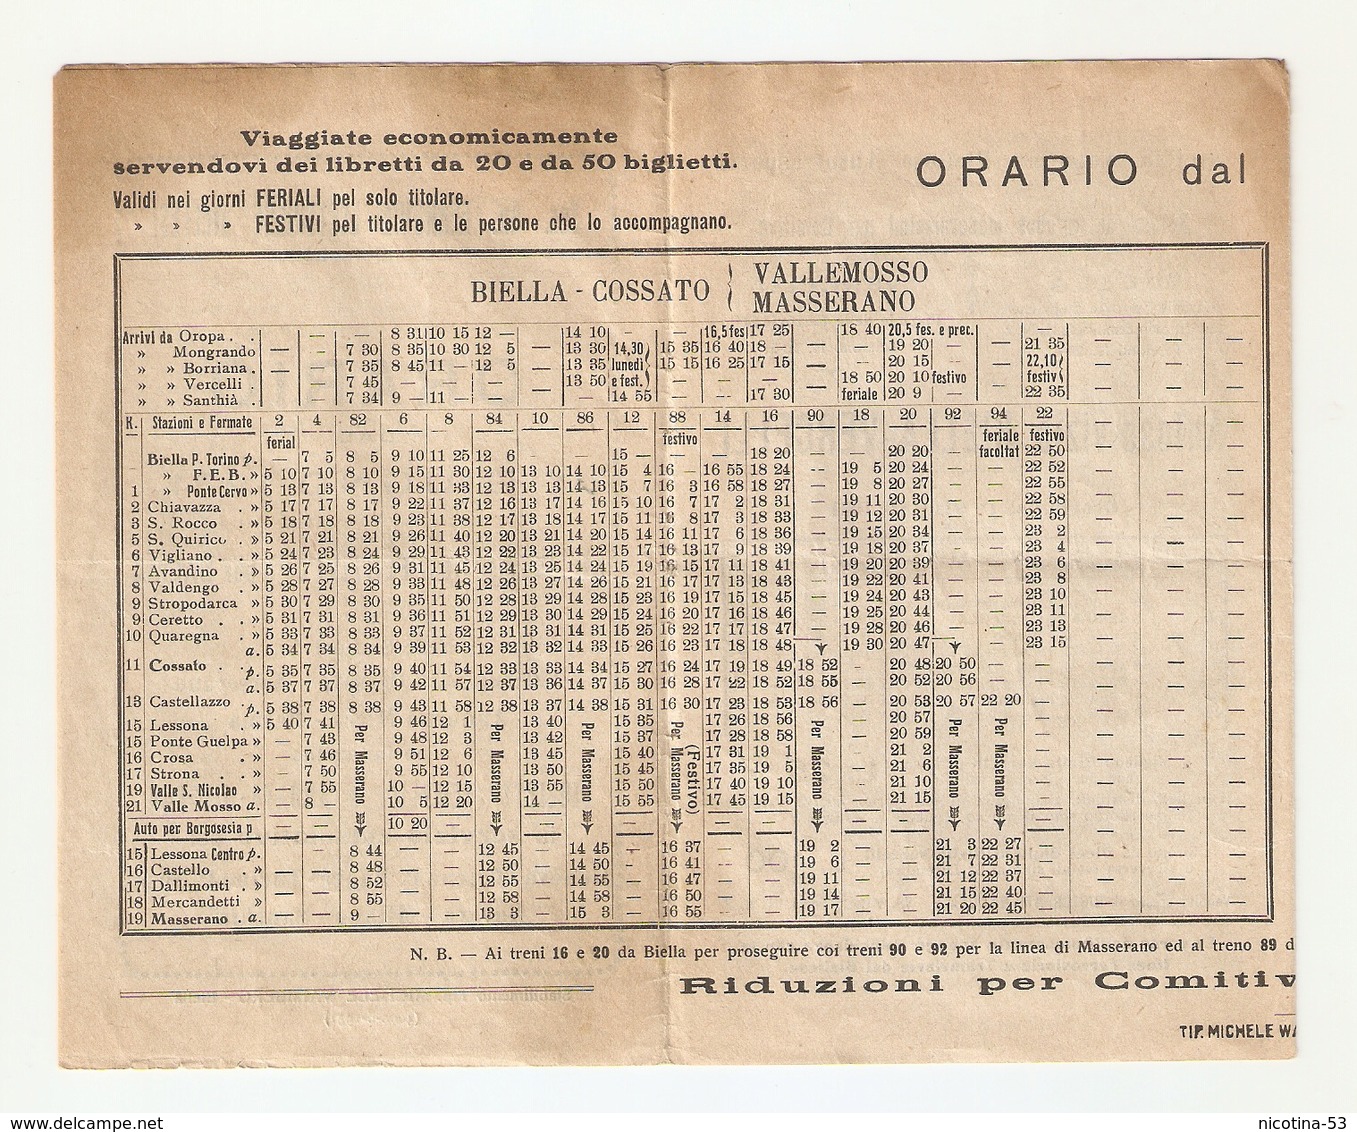 OR--0002-- ORARIO DAL 01/06/1931- SOC.ANONIMA FERROVIE ELETTRICHE BIELLESI- - Europe